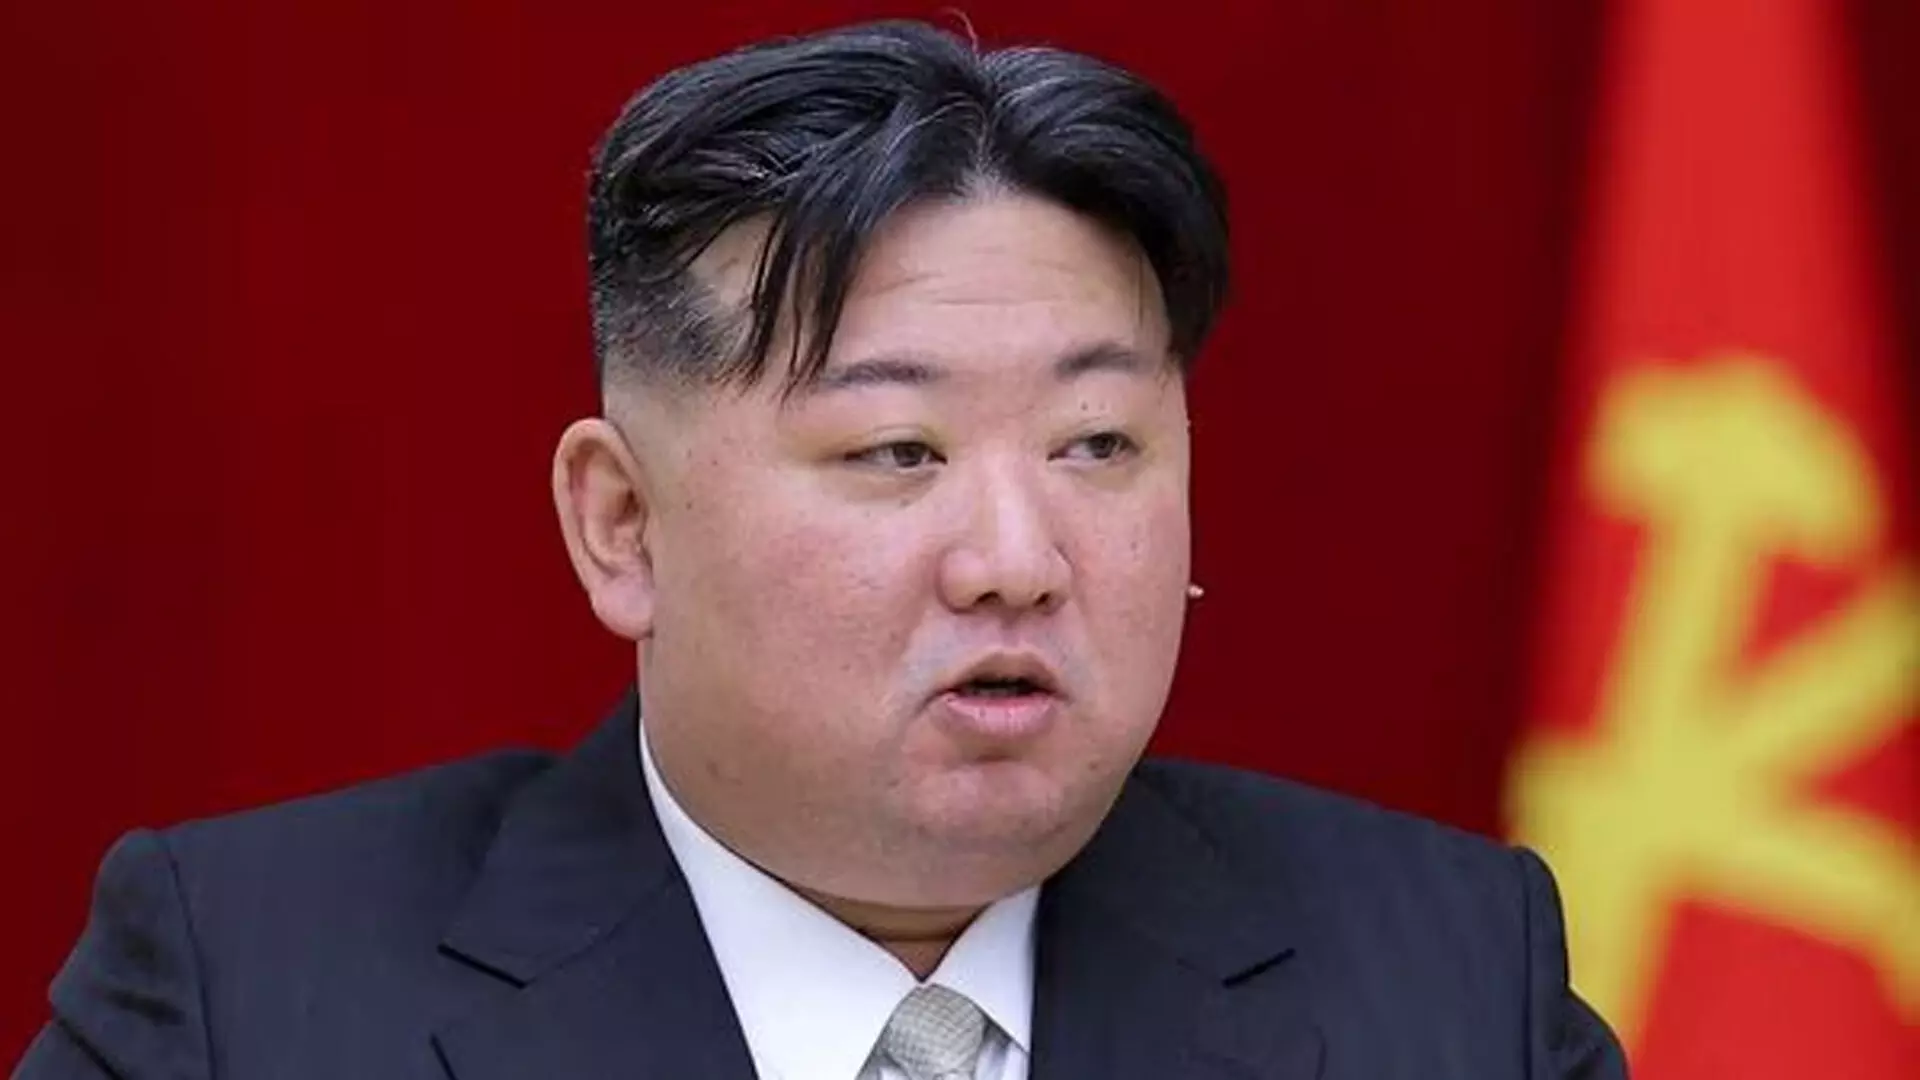 किम जोंग उन की बेटी करेंगी उत्तर कोरिया का नेतृत्व : सियोल